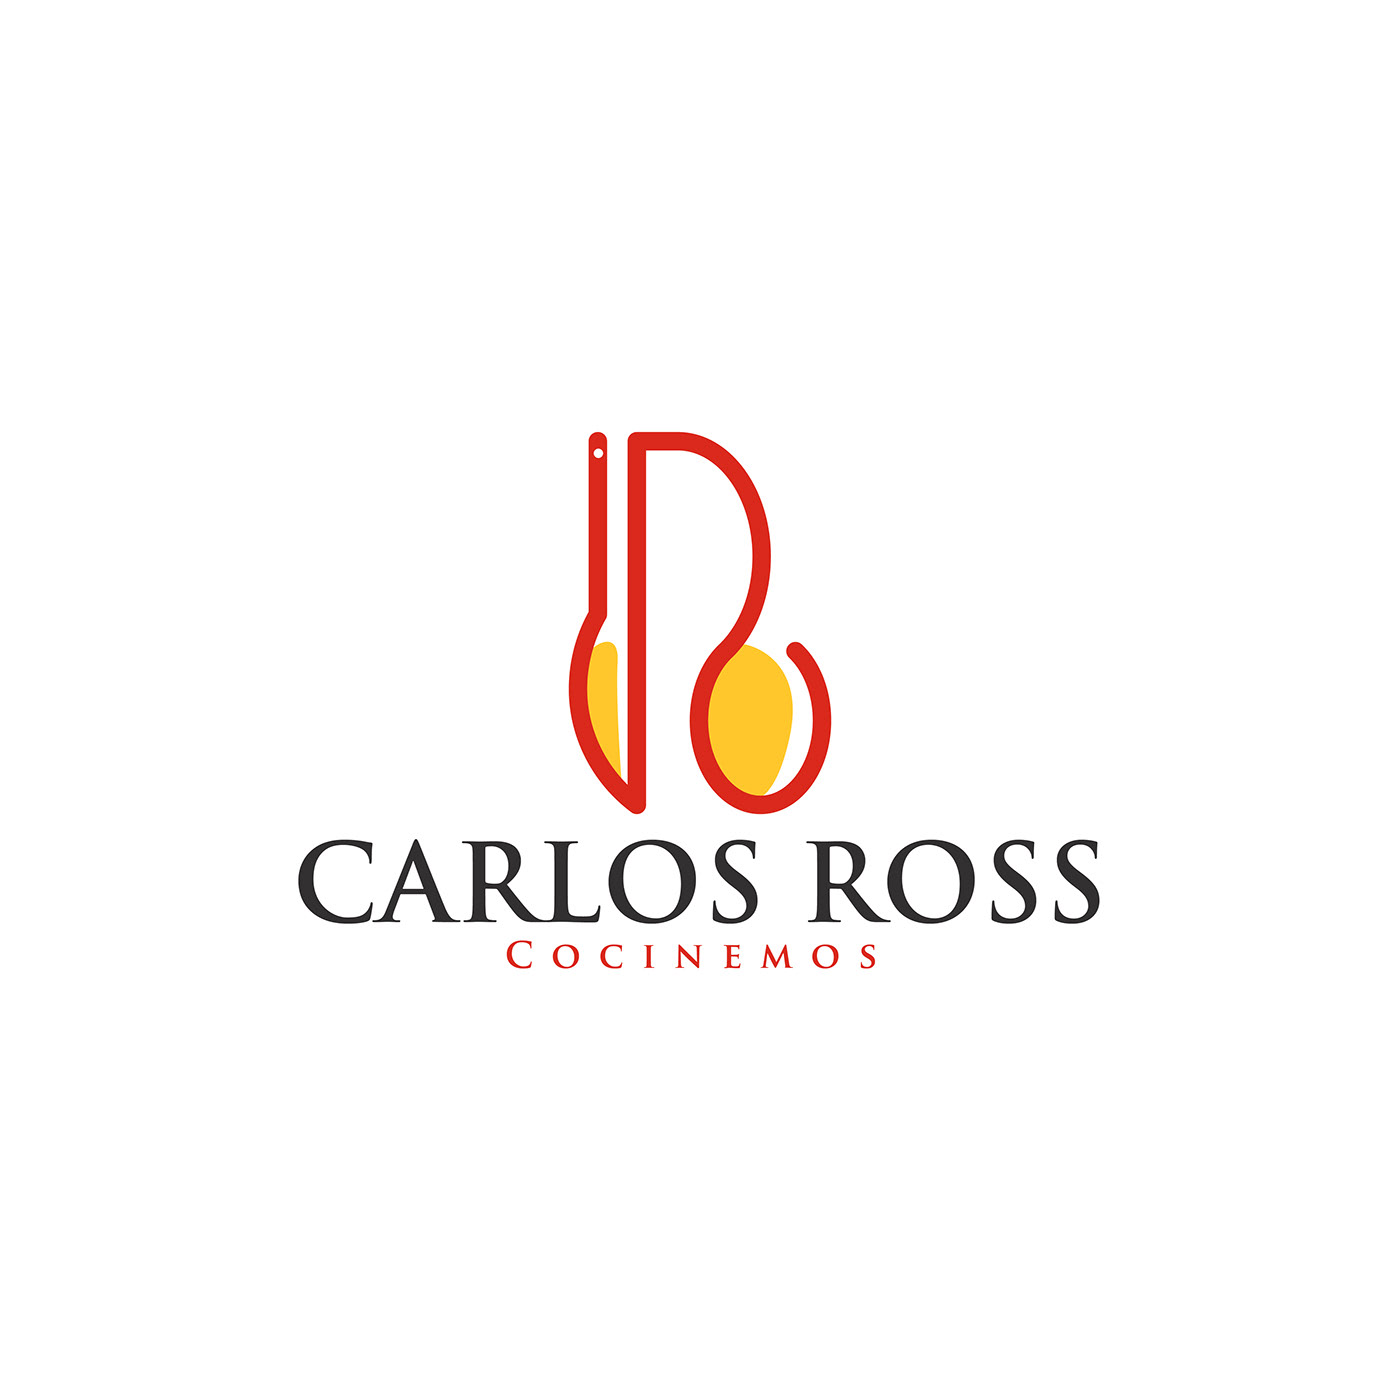 Carlos Ross cheff cocina cooking gastronomia